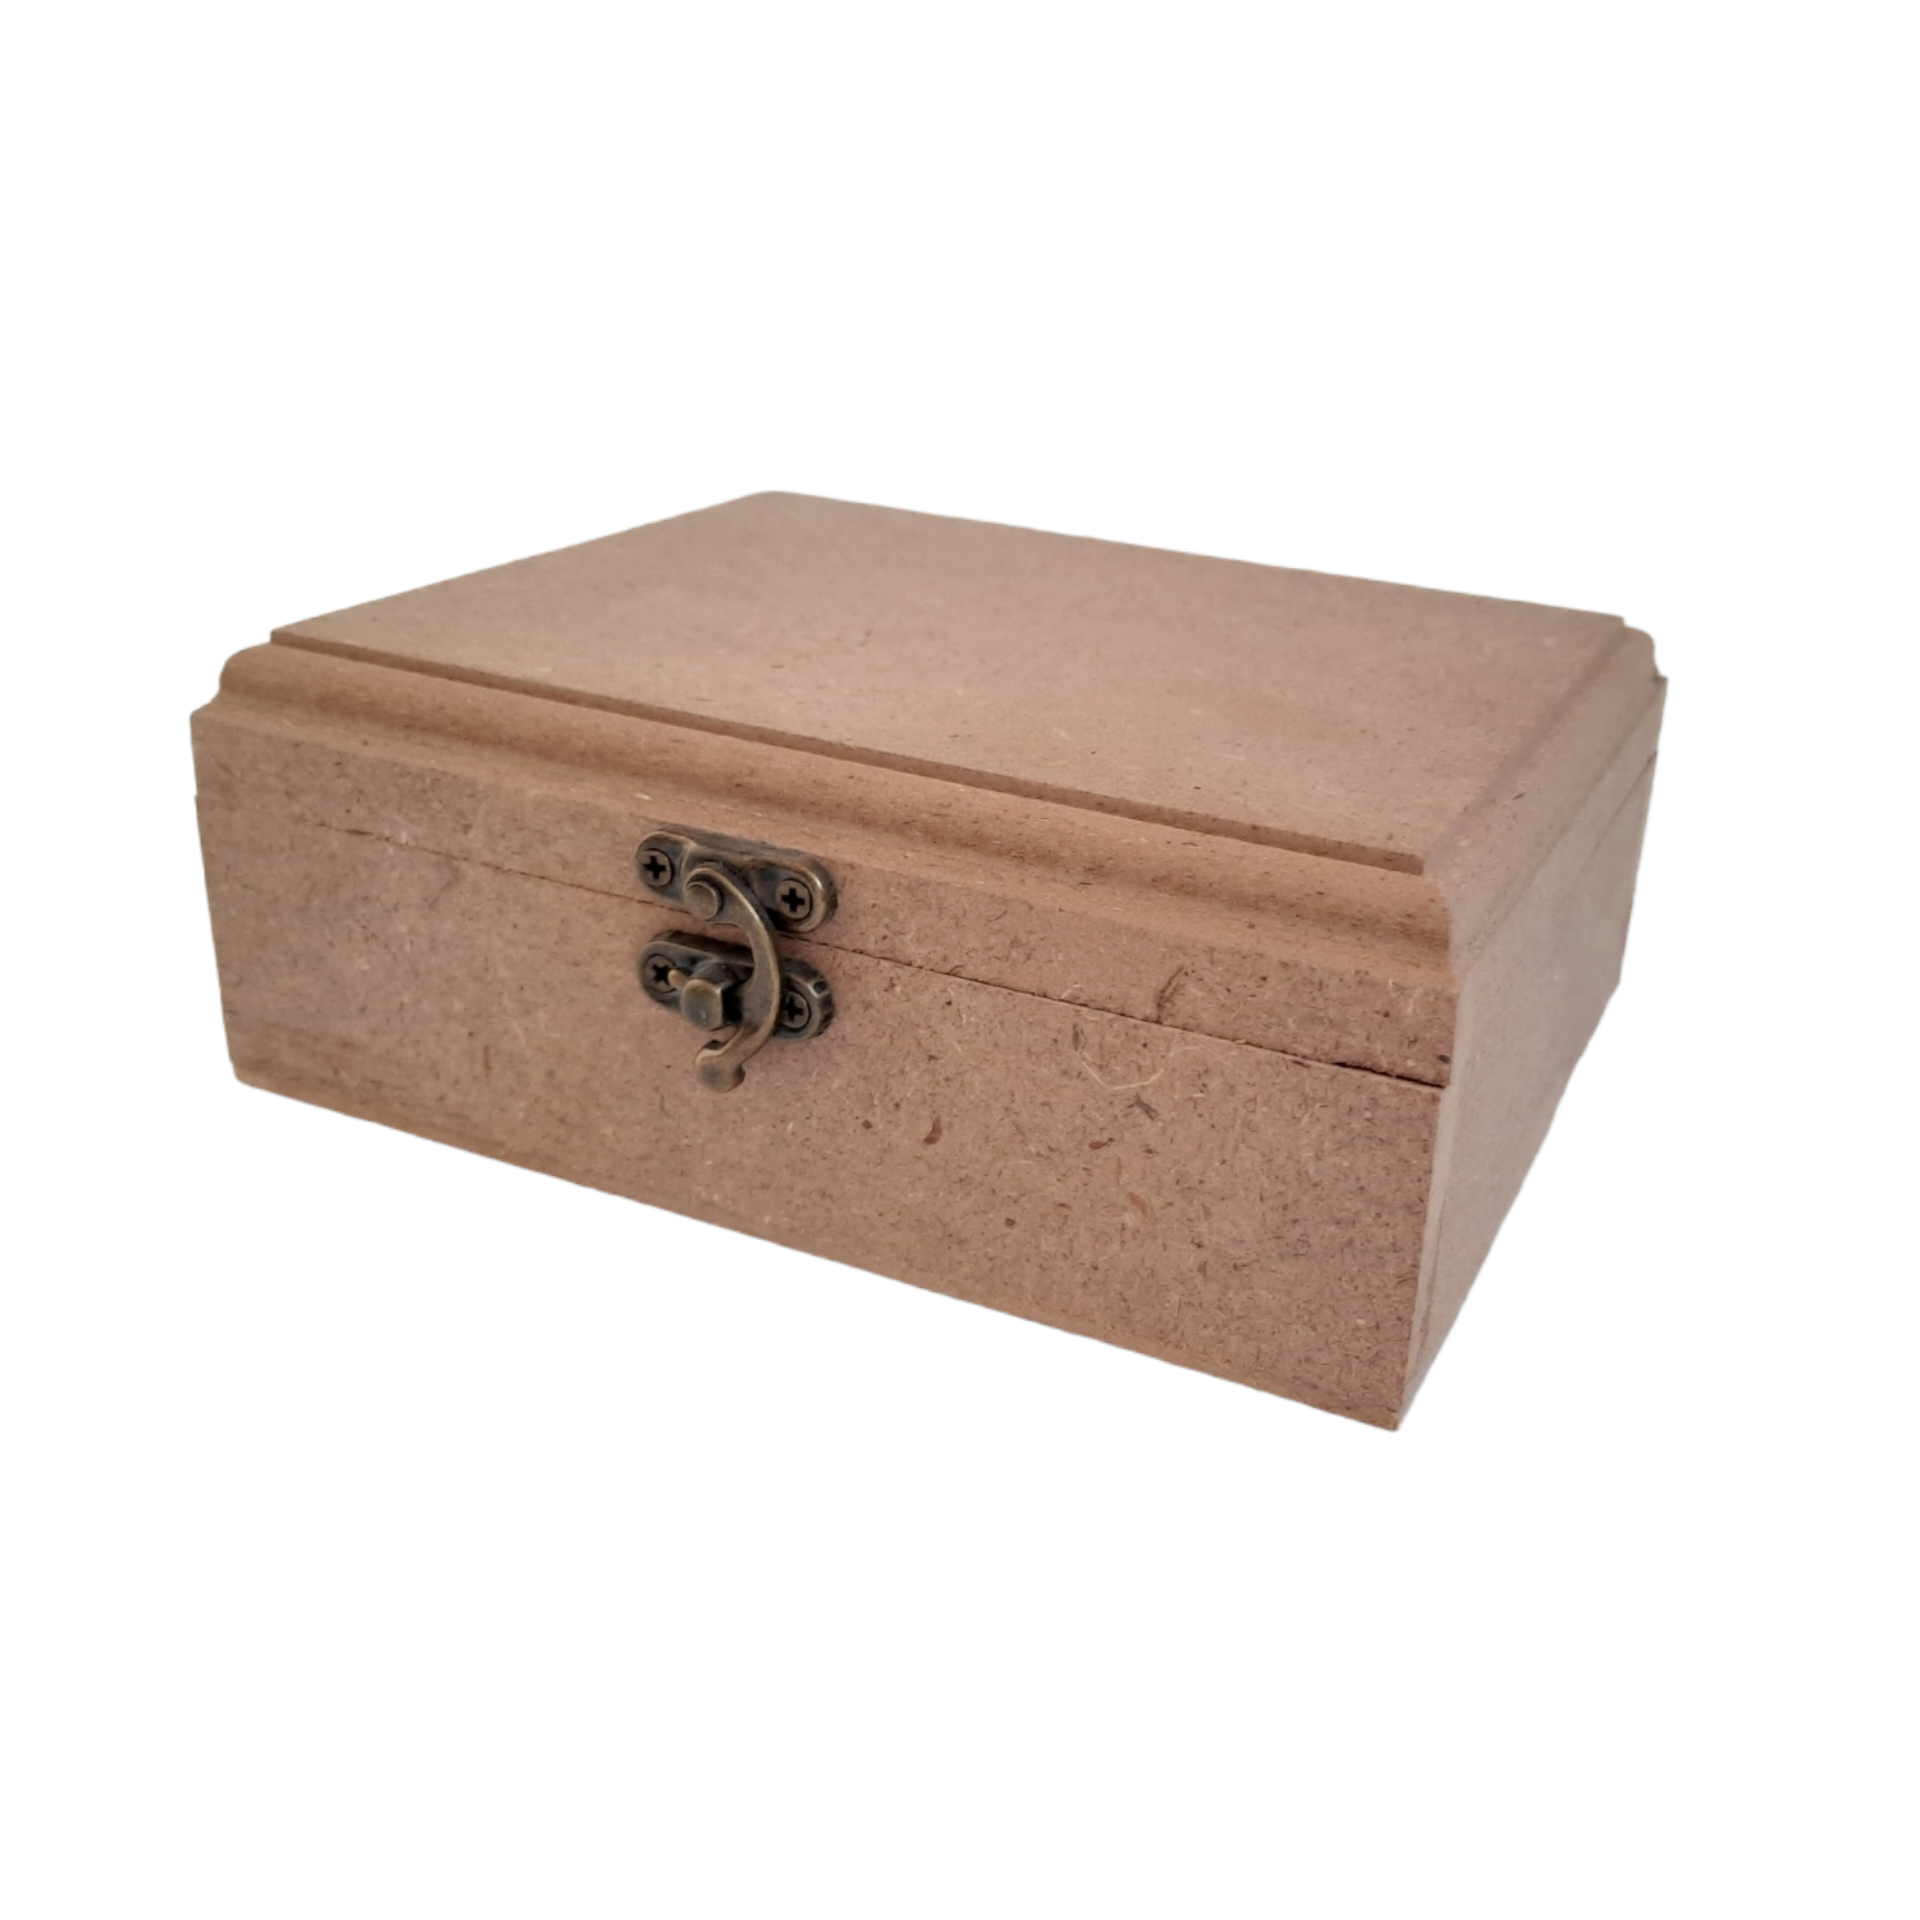 جعبه چوبی خام مدل درب دار